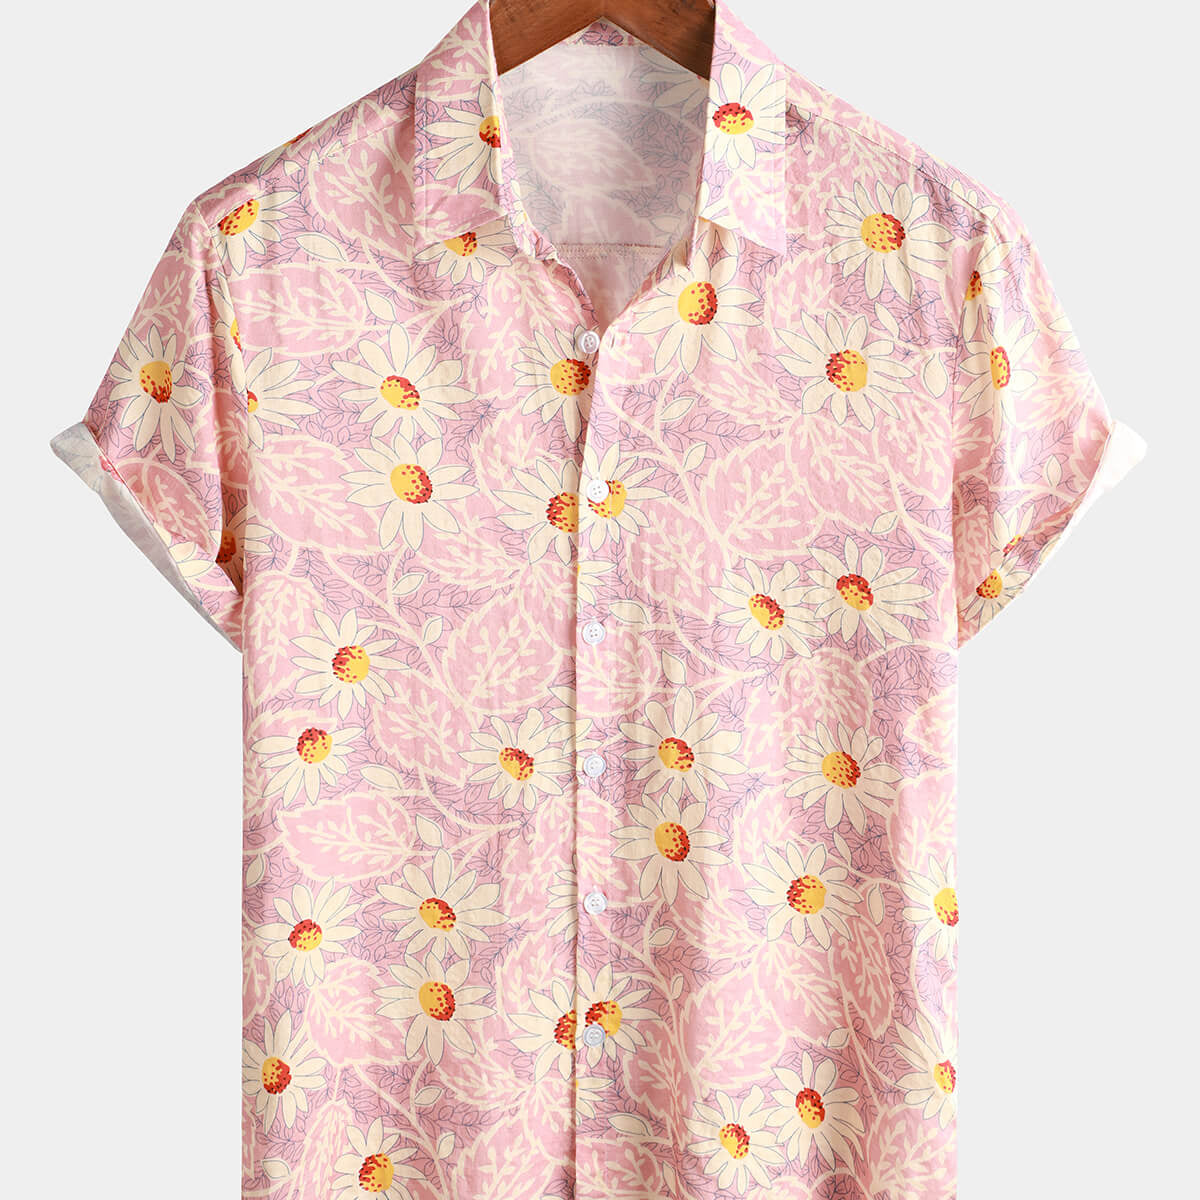 Camisa de manga corta con botones para hombre, color rosa, floral, linda, margarita, retro, playa, hawaiano, algodón, vacaciones